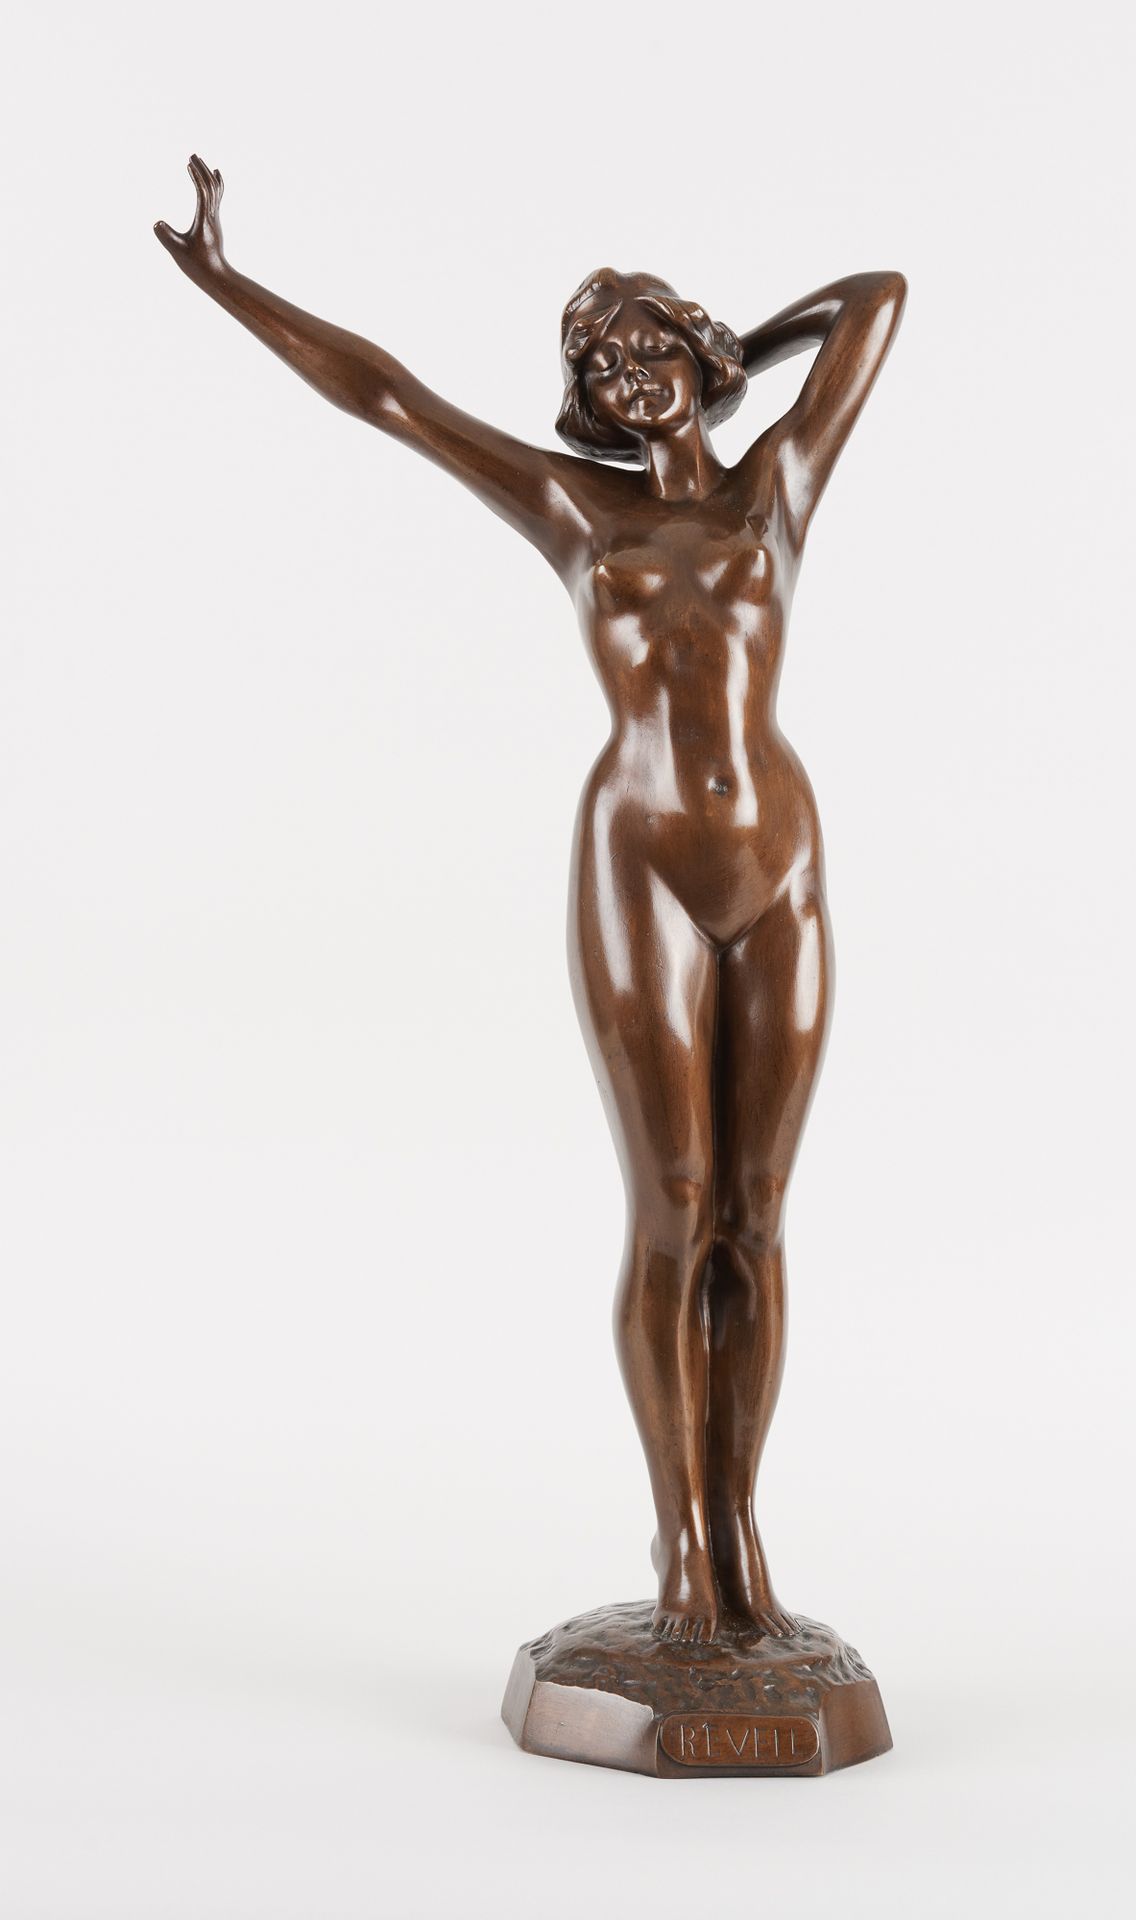 Travail du 20e. Sculpture en bronze à patine brune: Réveil.

Dim.: H.: 72,5 cm.